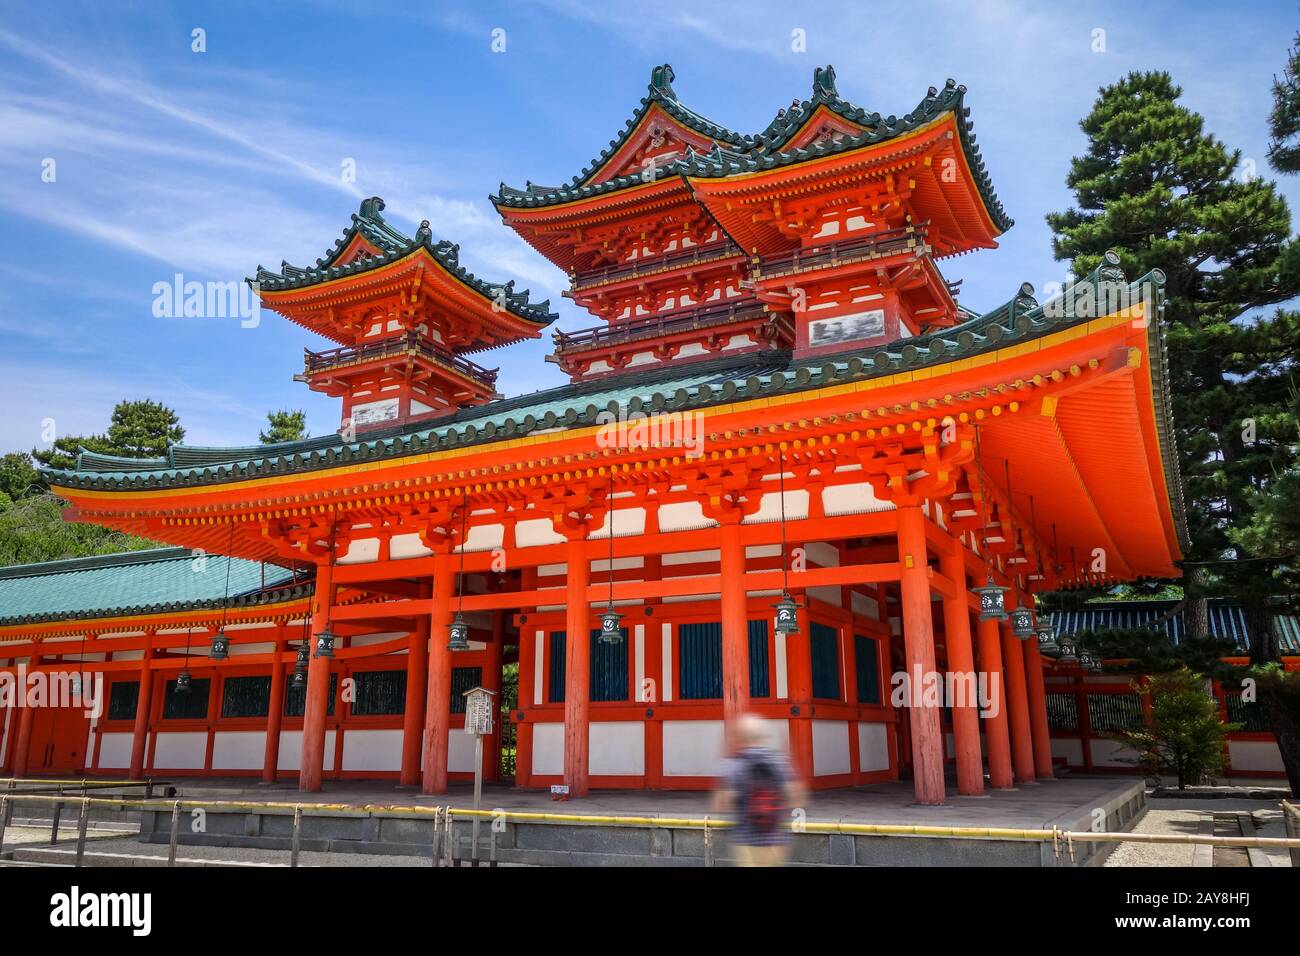 Heian Jingu Shrine temple, Kyoto, Japan Stock Photo